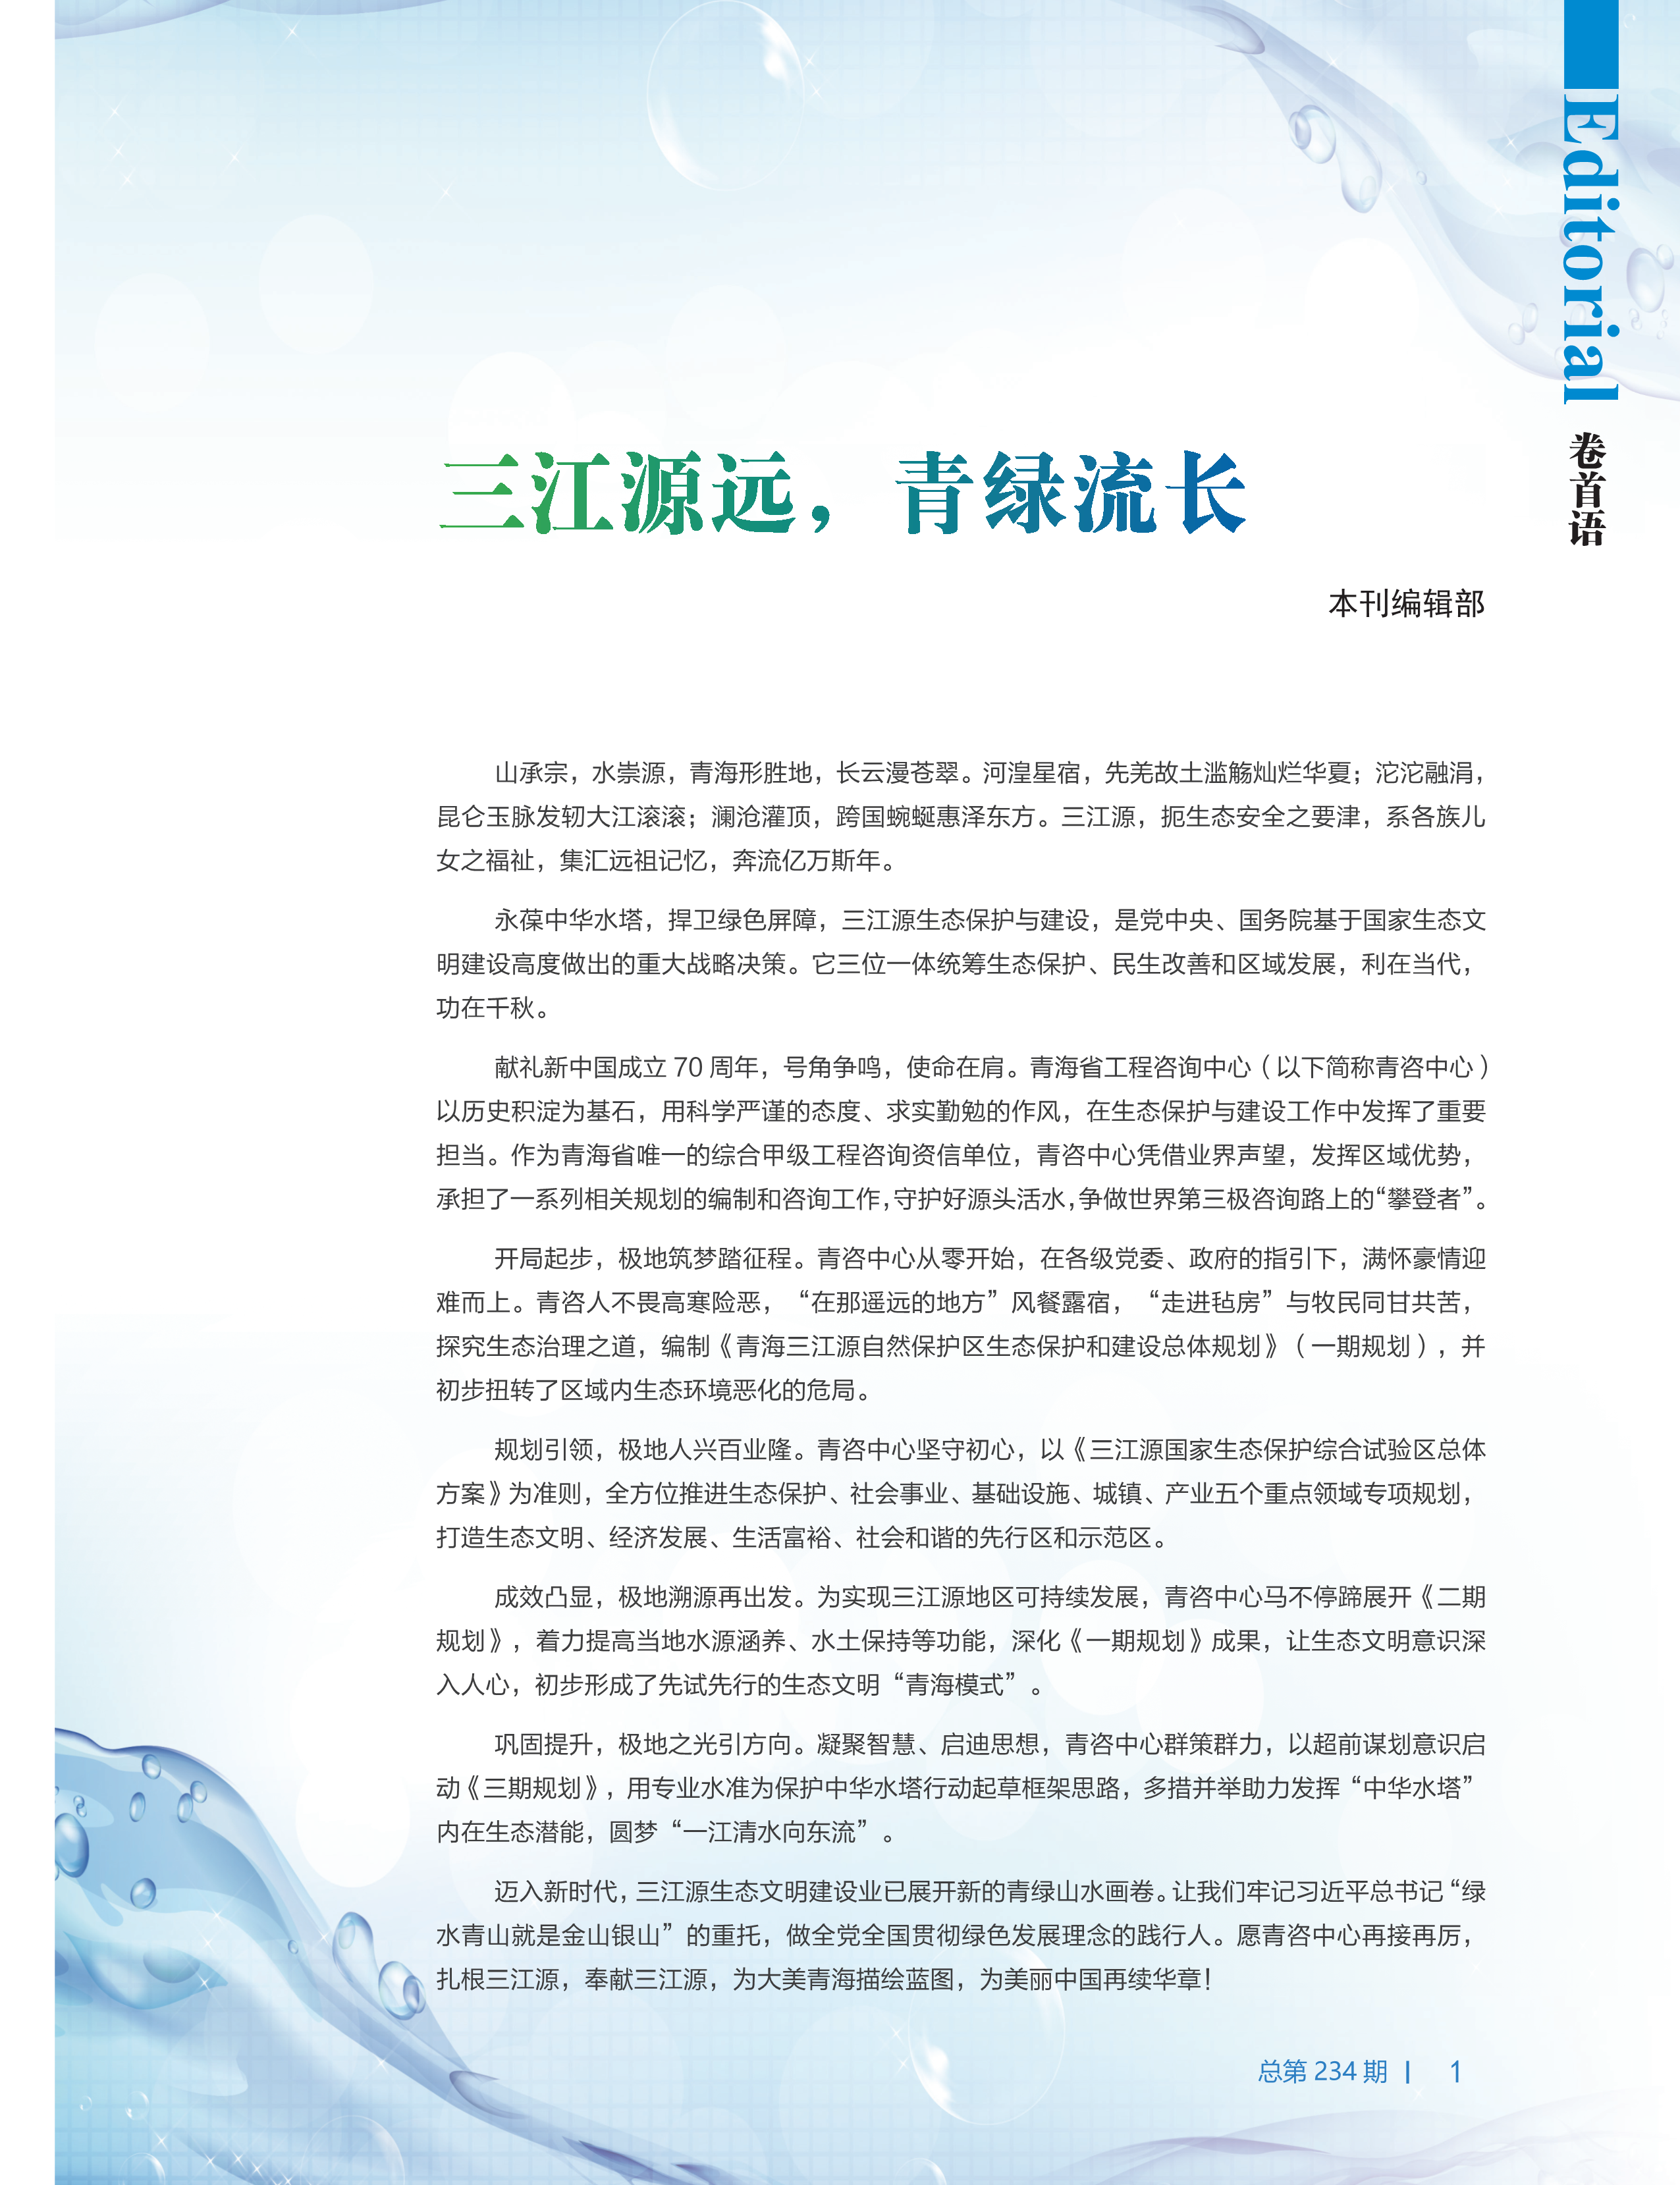 中国工程咨询2019年第十一期-复件-1_1